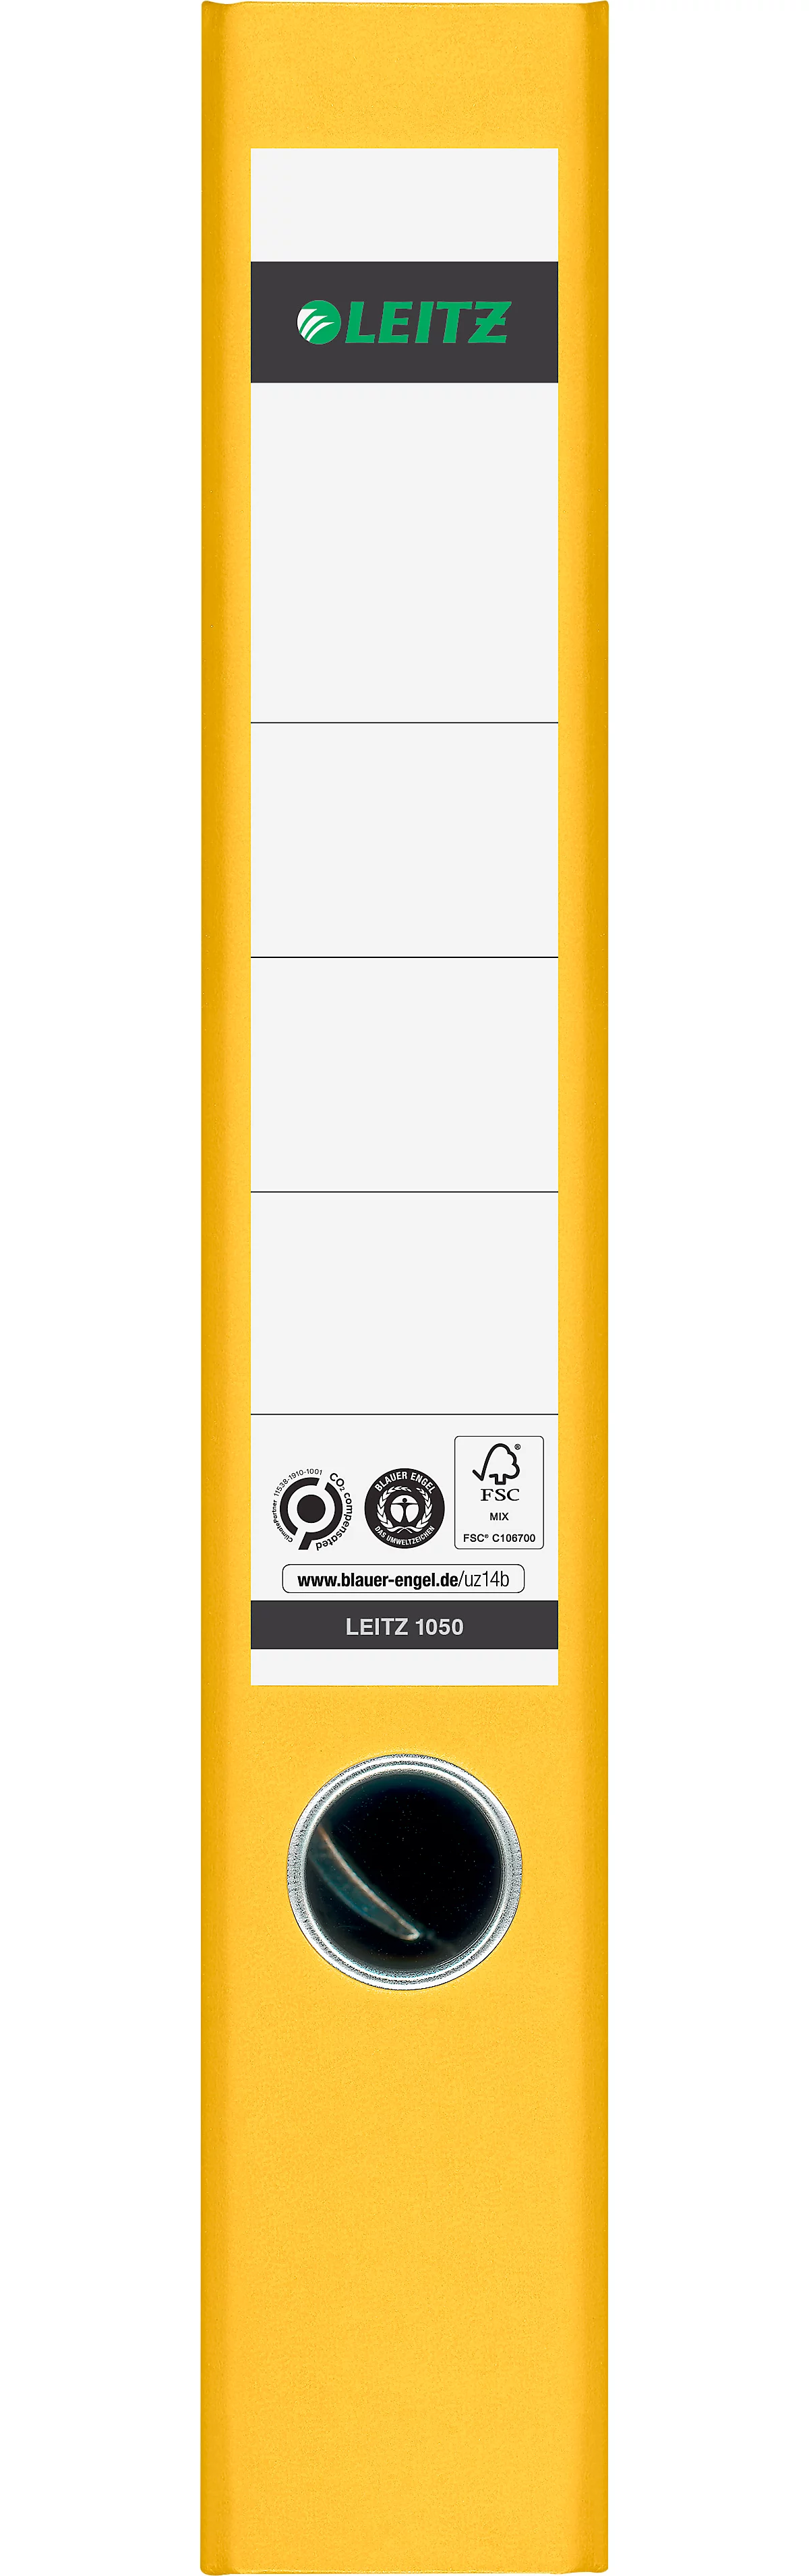 Ordner LEITZ® 1050, DIN A4, Rückenbreite 52 mm, Griffloch, geklebtes Rückenschild, klimaneutral, Hartpappe, 1 Stück, gelb